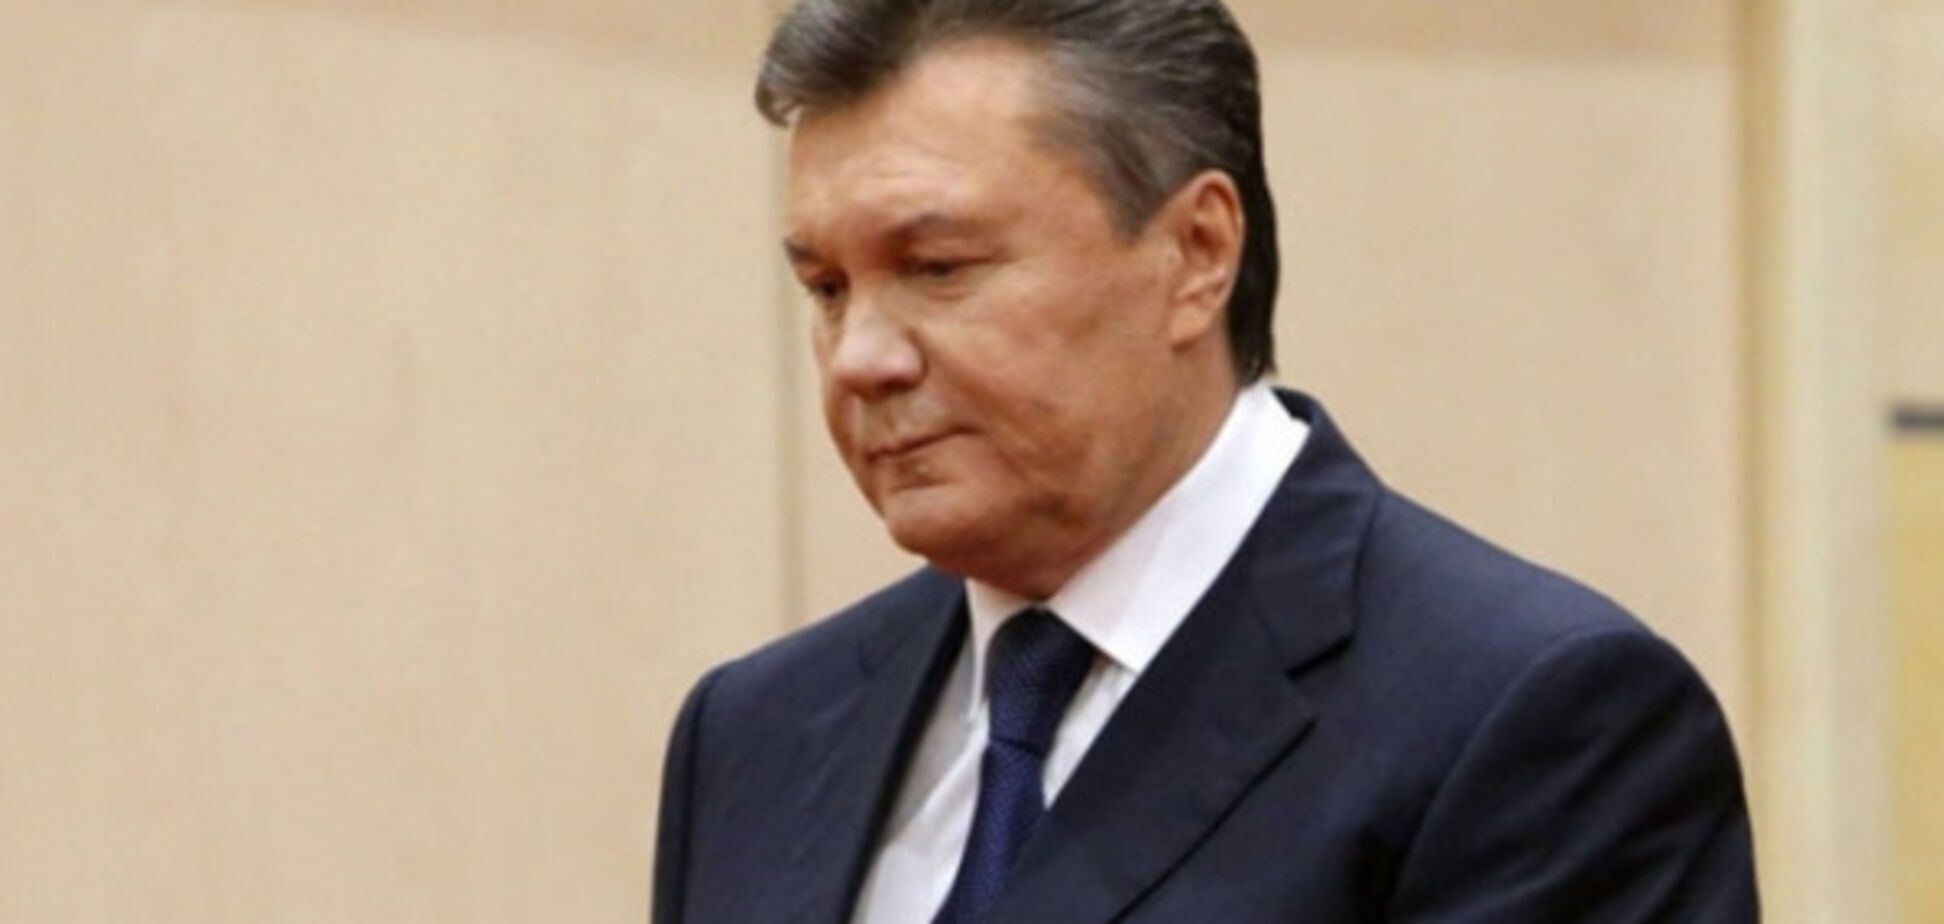 Допит Януковича в якості свідка - це спецоперація Луб'янки